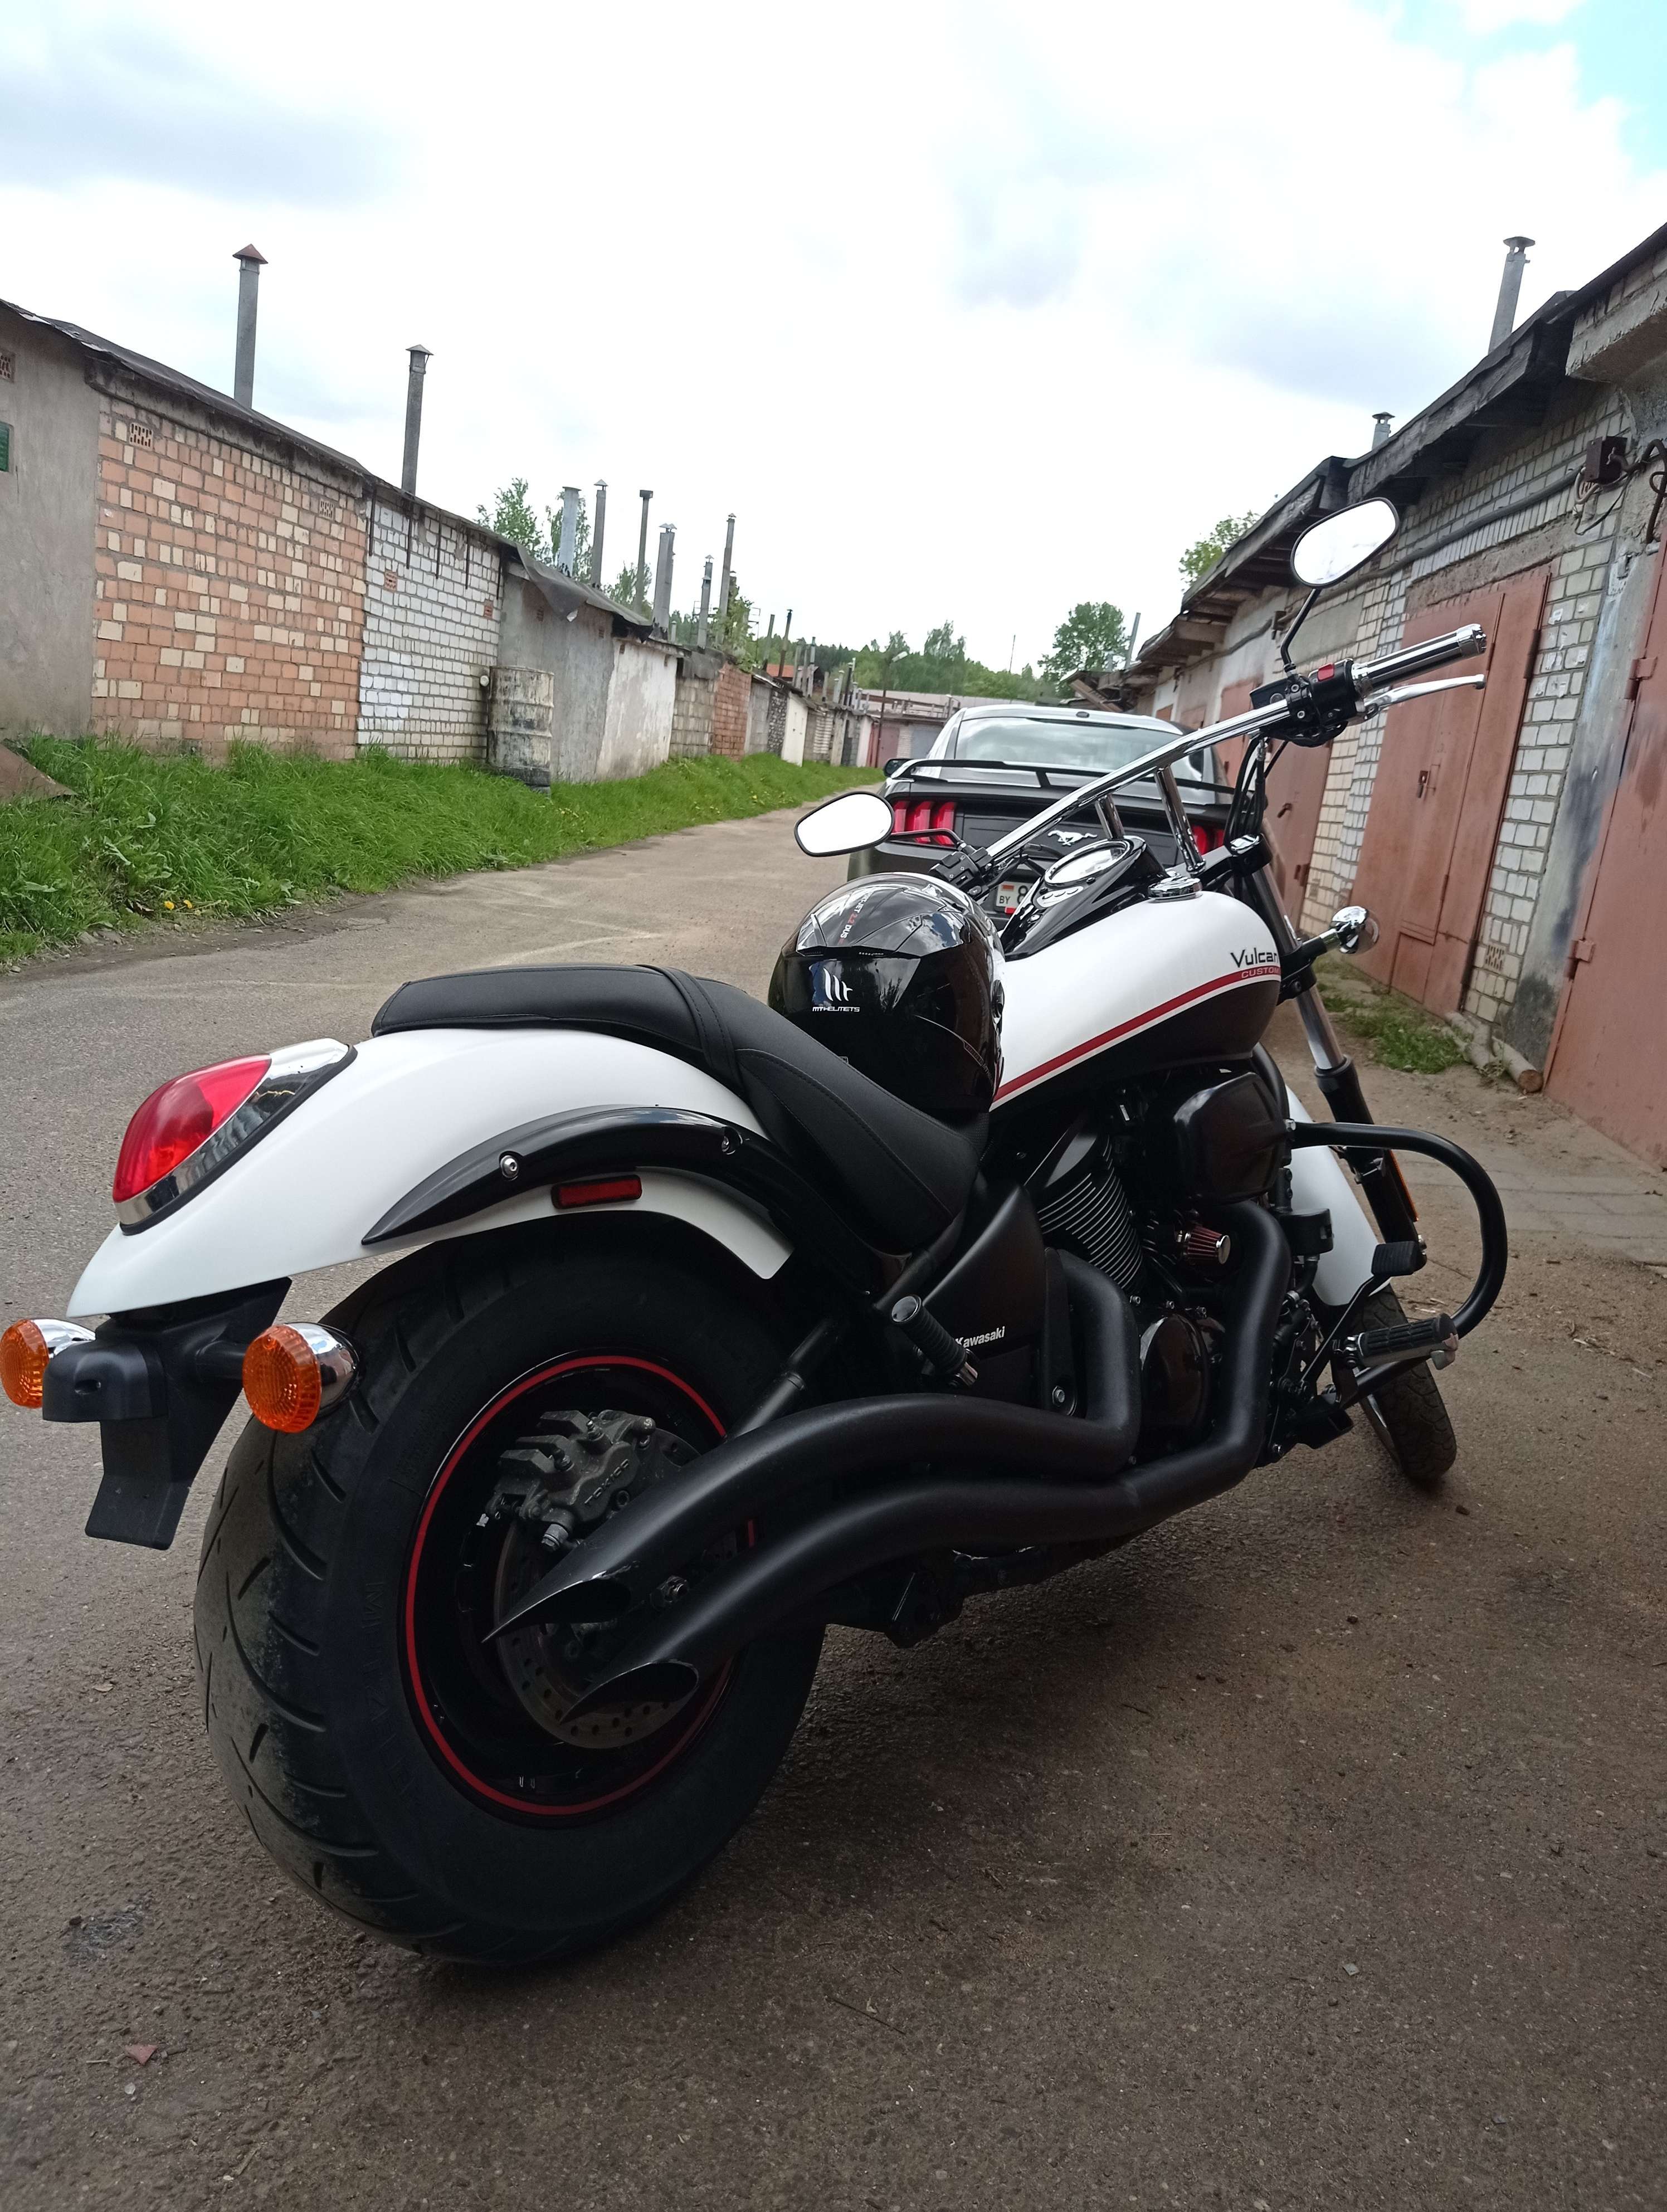 Купить мотоцикл Kawasaki в Беларуси в кредит - цены, характеристики, фото. 